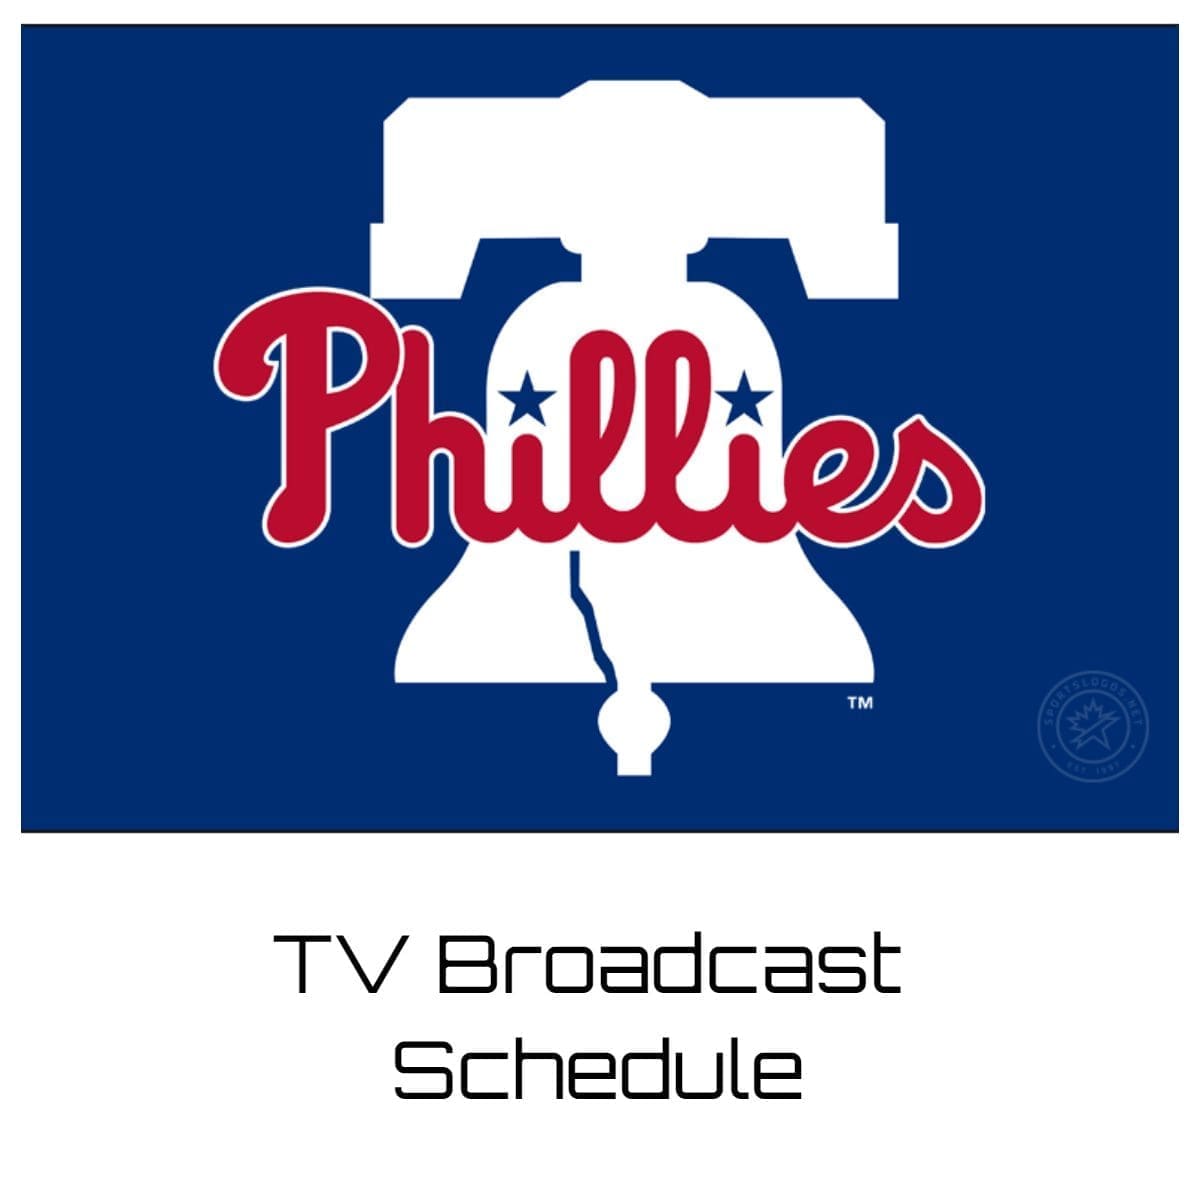 Philadelphia Phillies TV Broadcast Schedule